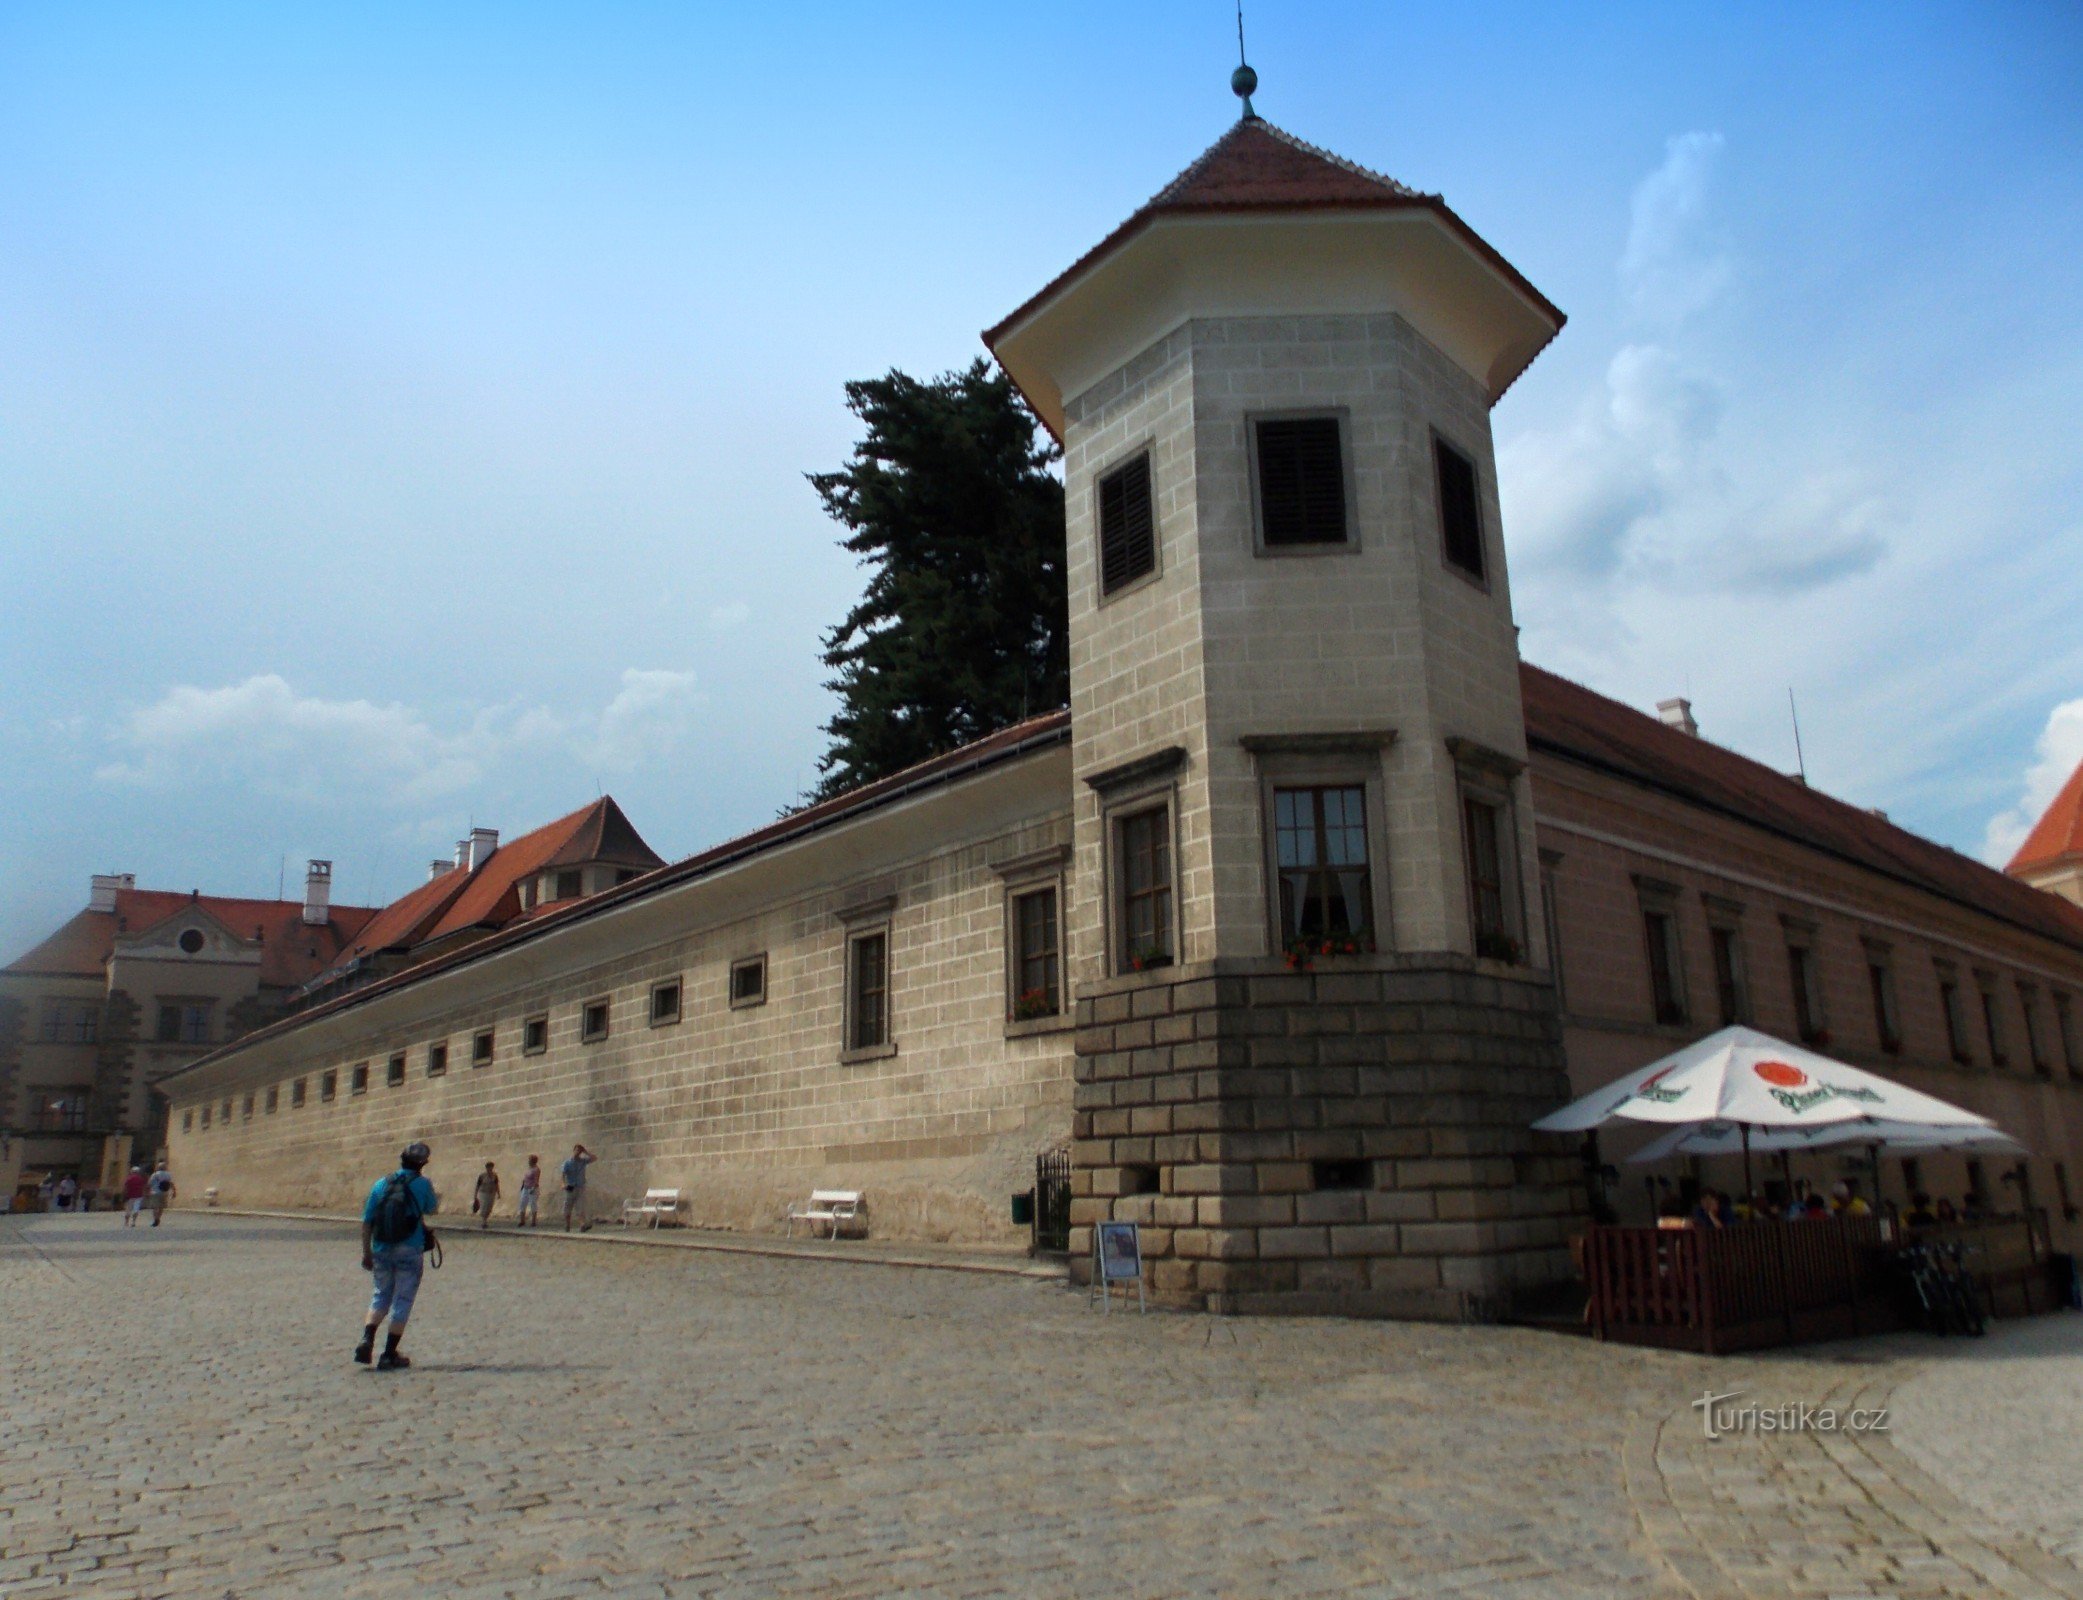 The fairytale center of Telč